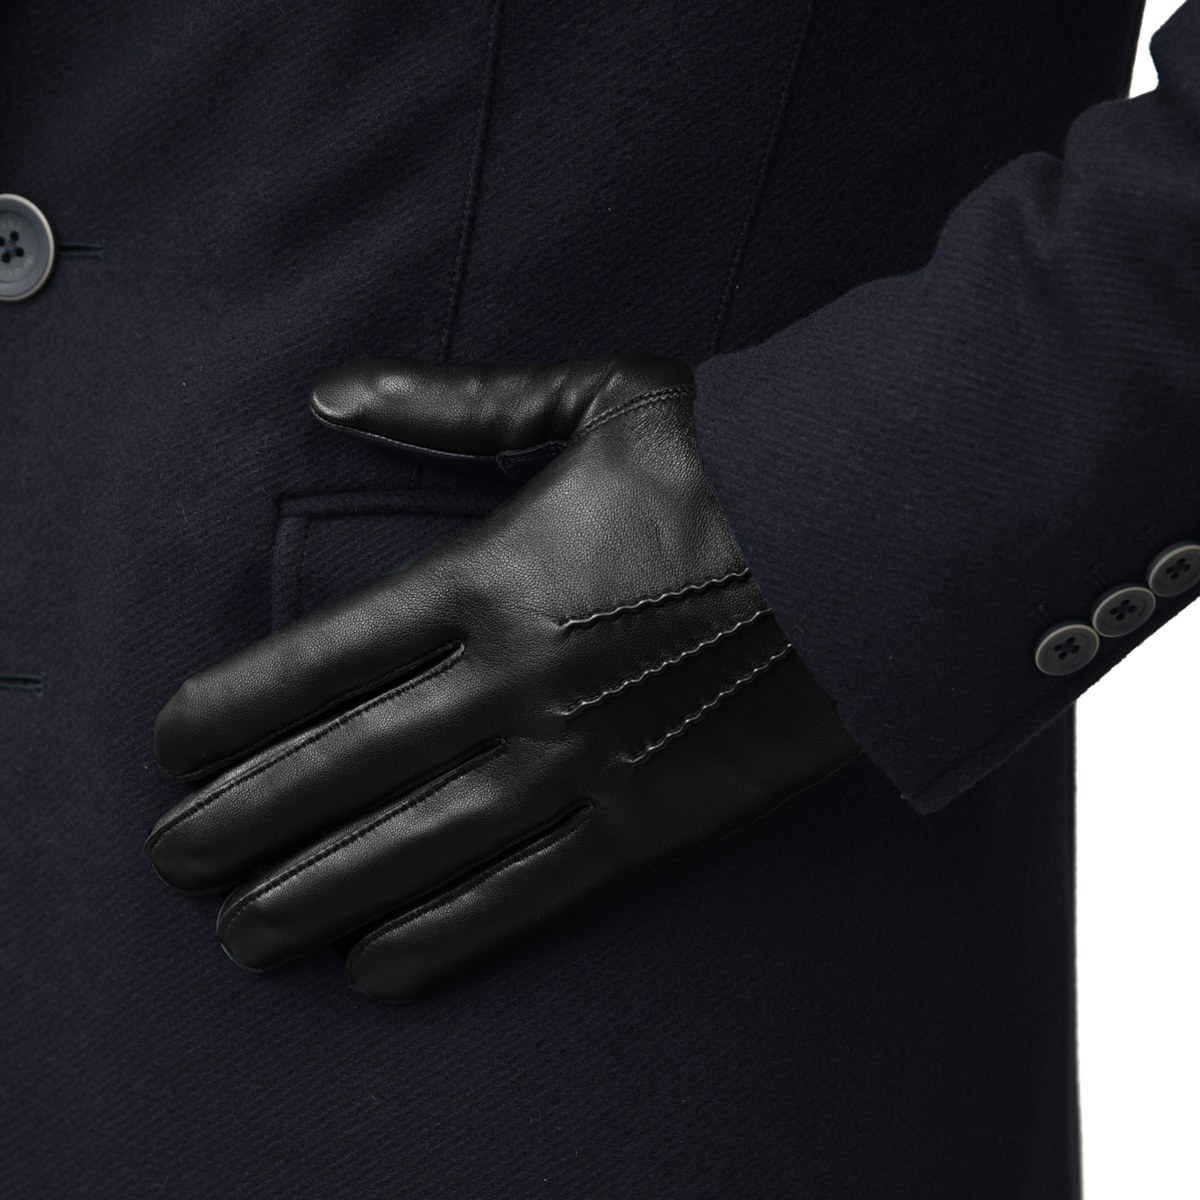 グローブス Gloves 手袋 レザー グローブ メンズ手袋 Ca060l ブラック レザー グローブ ネイビー ブラウン アイボリー オレンジなど全7色 ネコポス対応 本革 グローブ メンズ Grandpere100年続く老舗グローブファクトリーが送るクオリティ抜群のグローブ